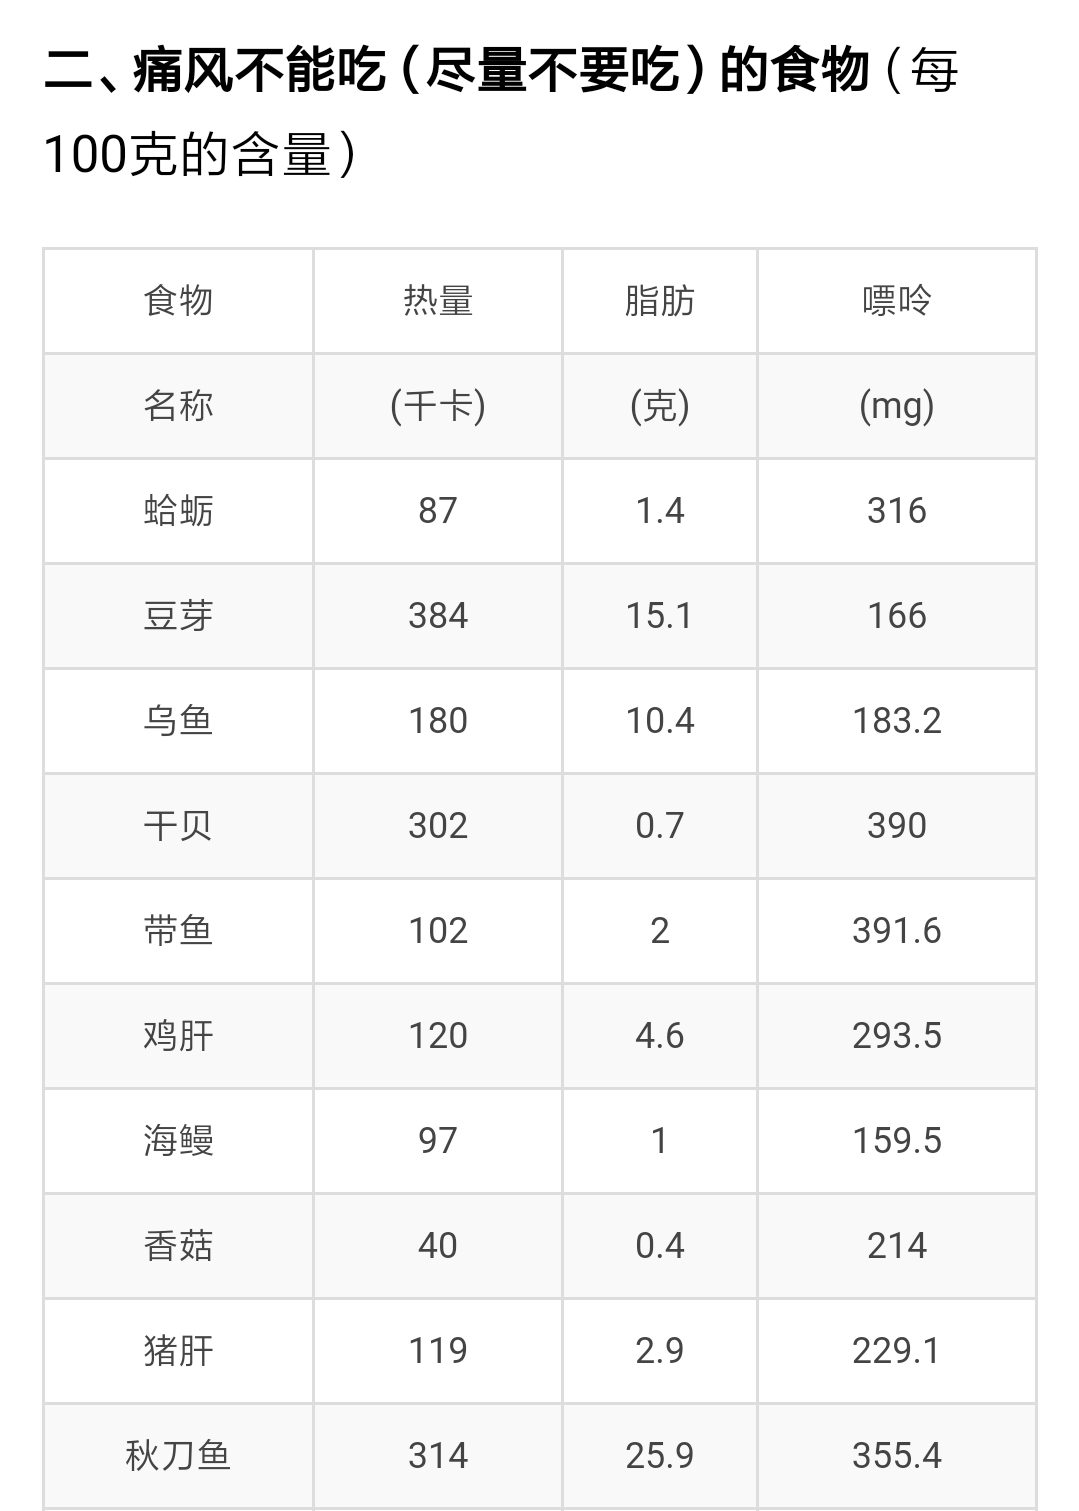 食物中嘌呤含量表:痛风患者适宜吃及少吃的食